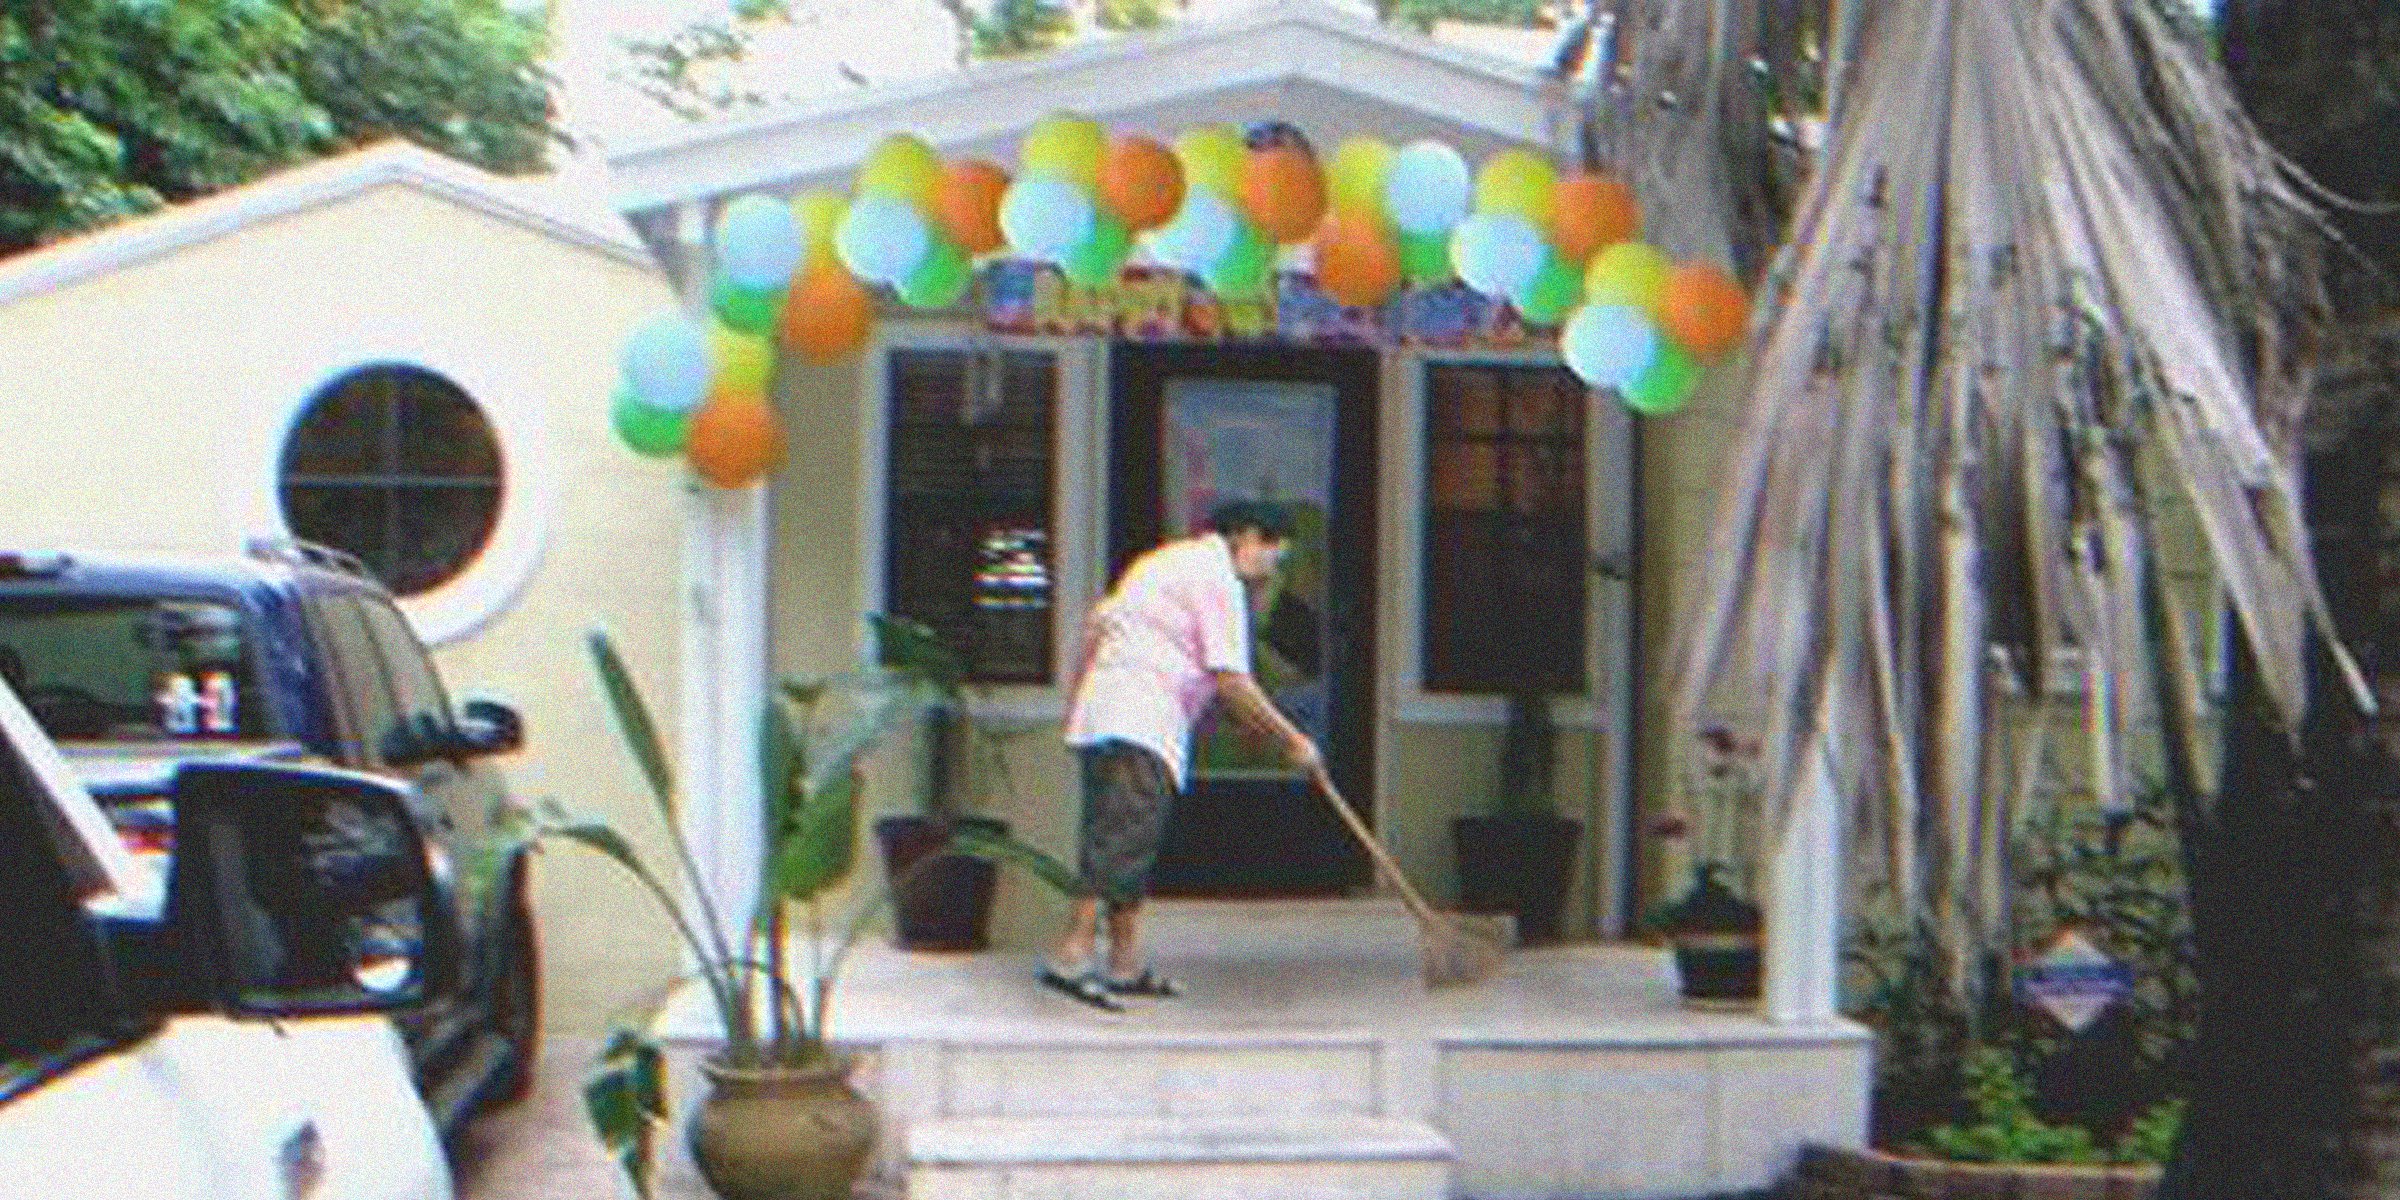 Mujer limpia el piso de una casa | Foto: flickr.com/mathplourde